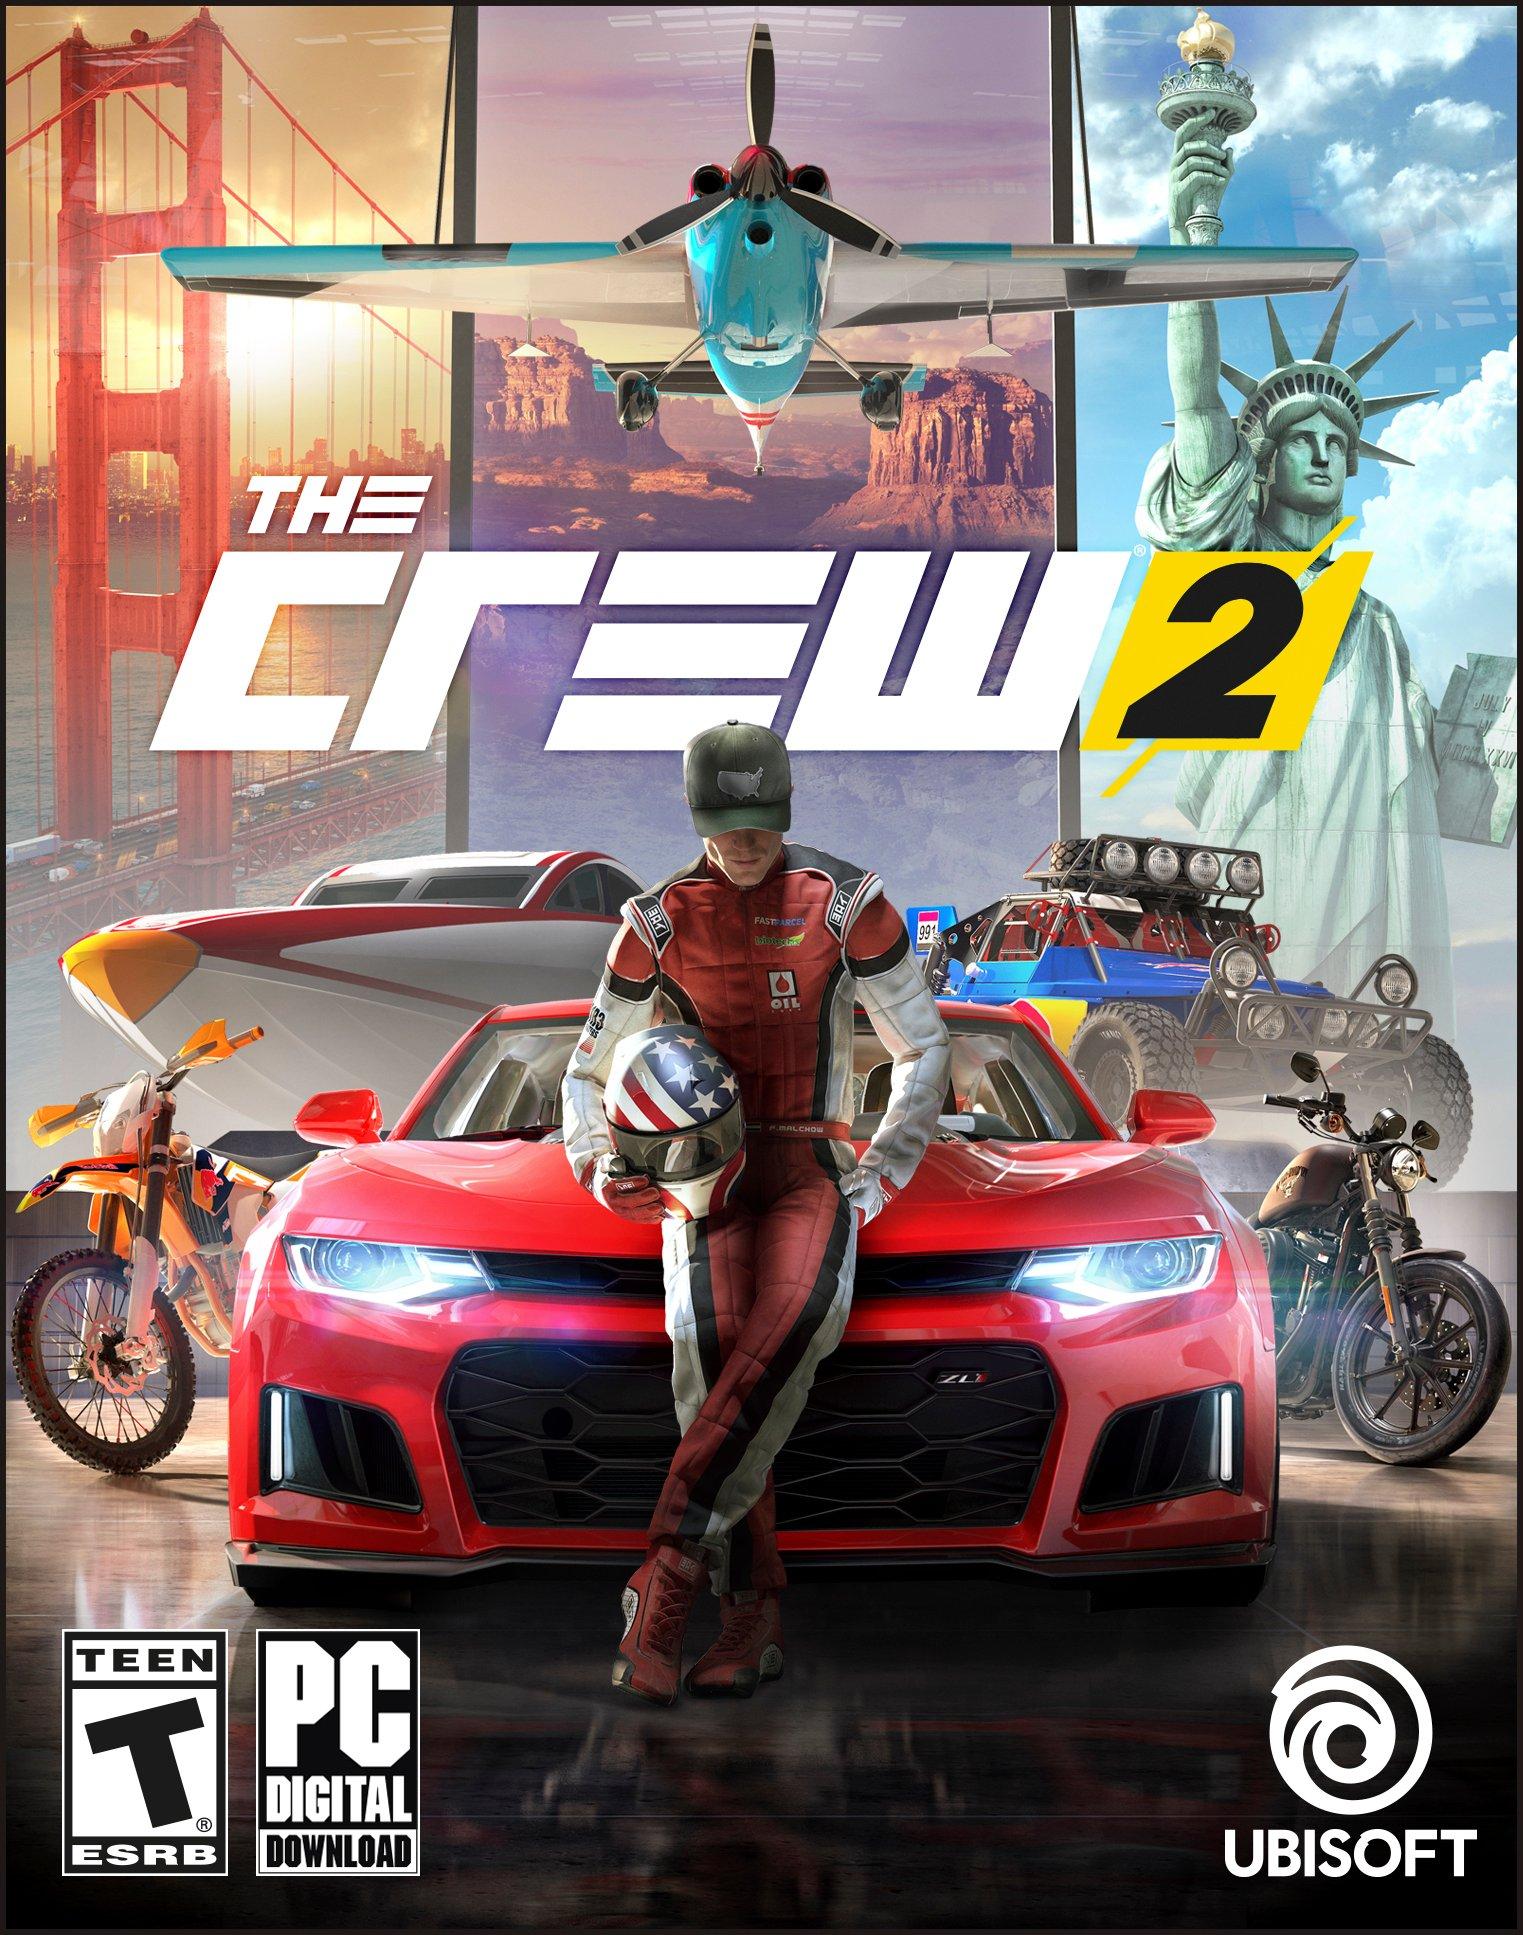 The Crew 2 - PC